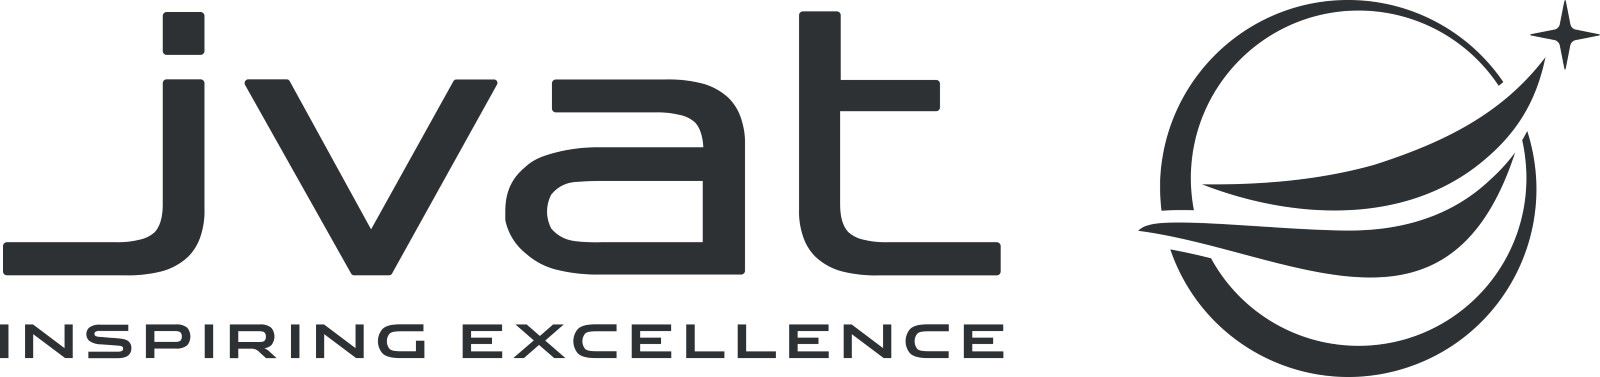 Linked logo for JVAT